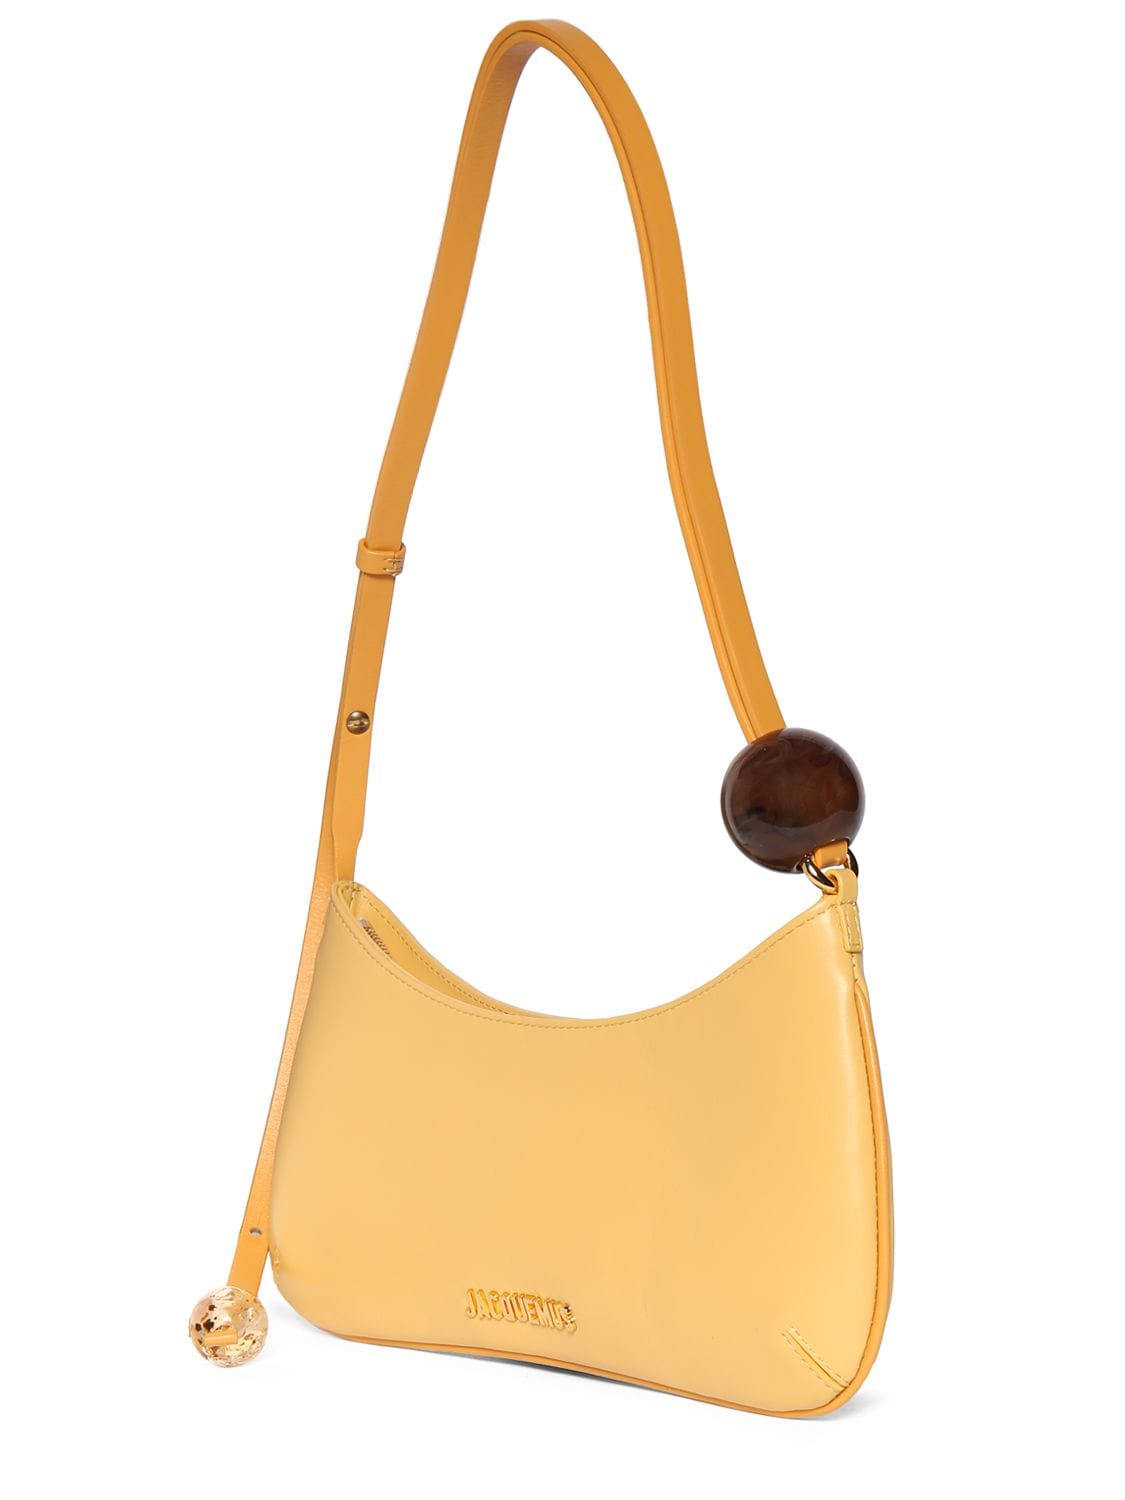 Jacquemus - Women's Le Bisou Perle Shoulder Bag - Yellow - Leather